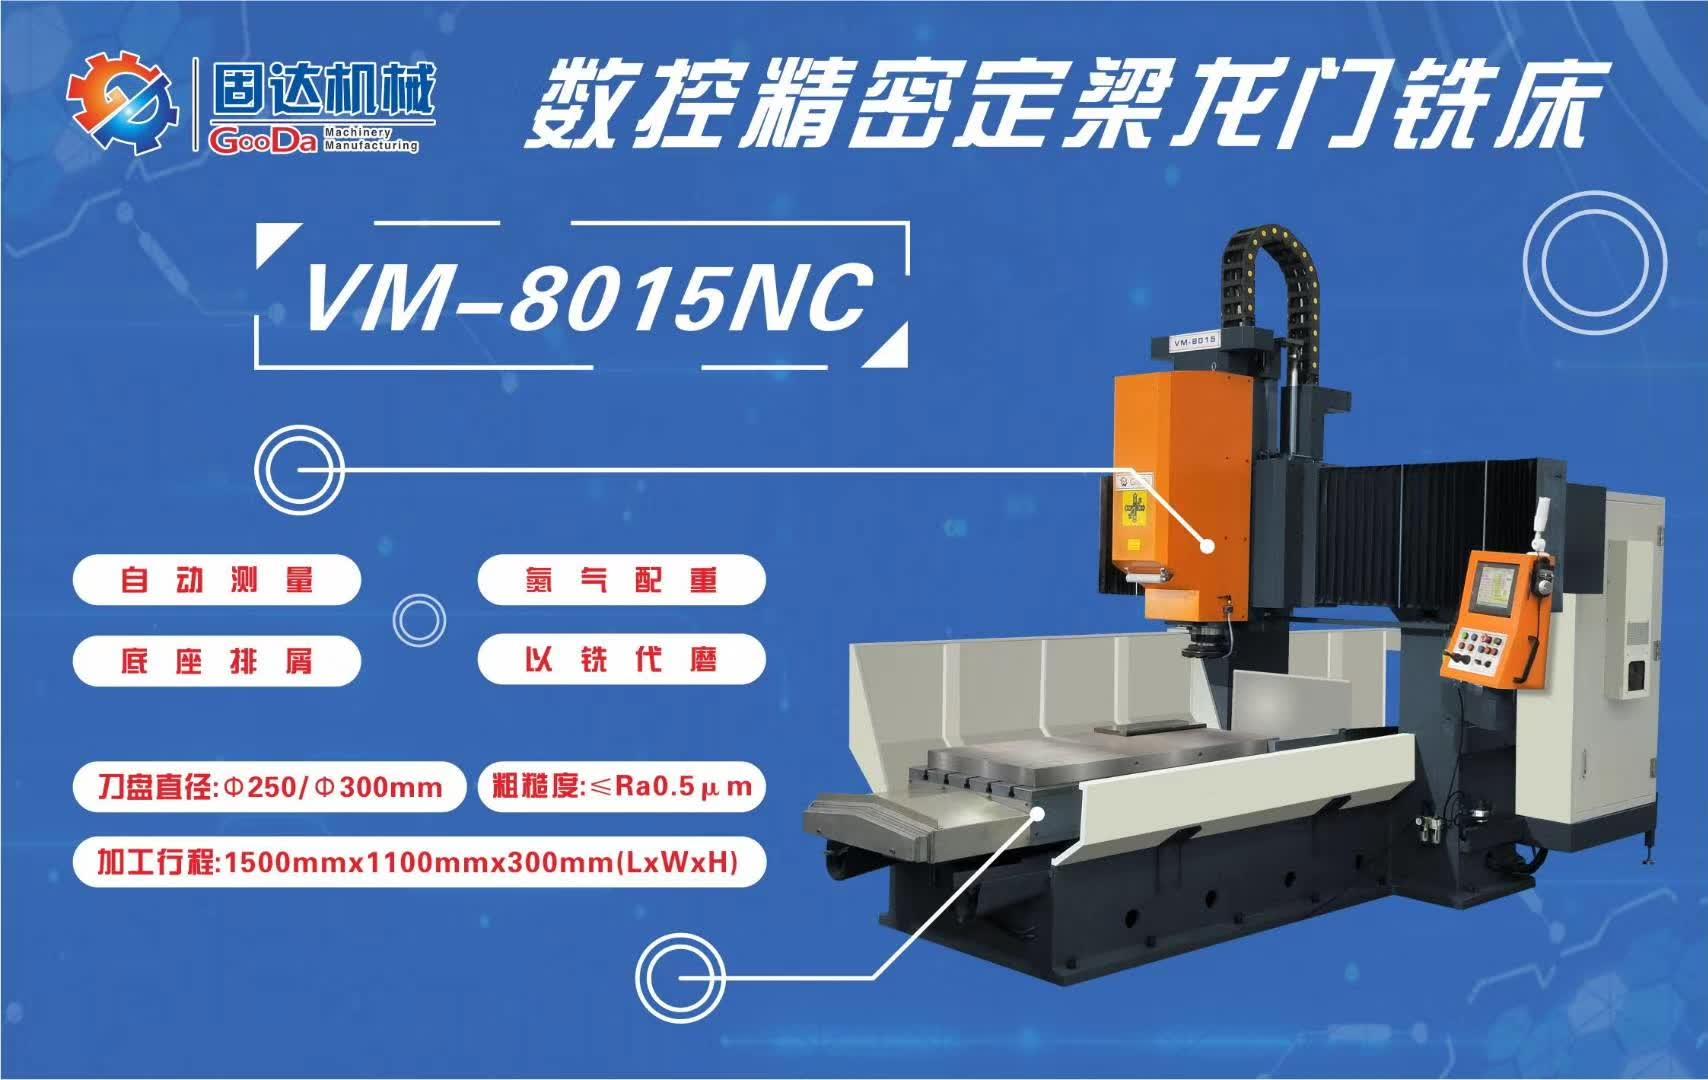 CNC vertical milling machine VM-8015NC